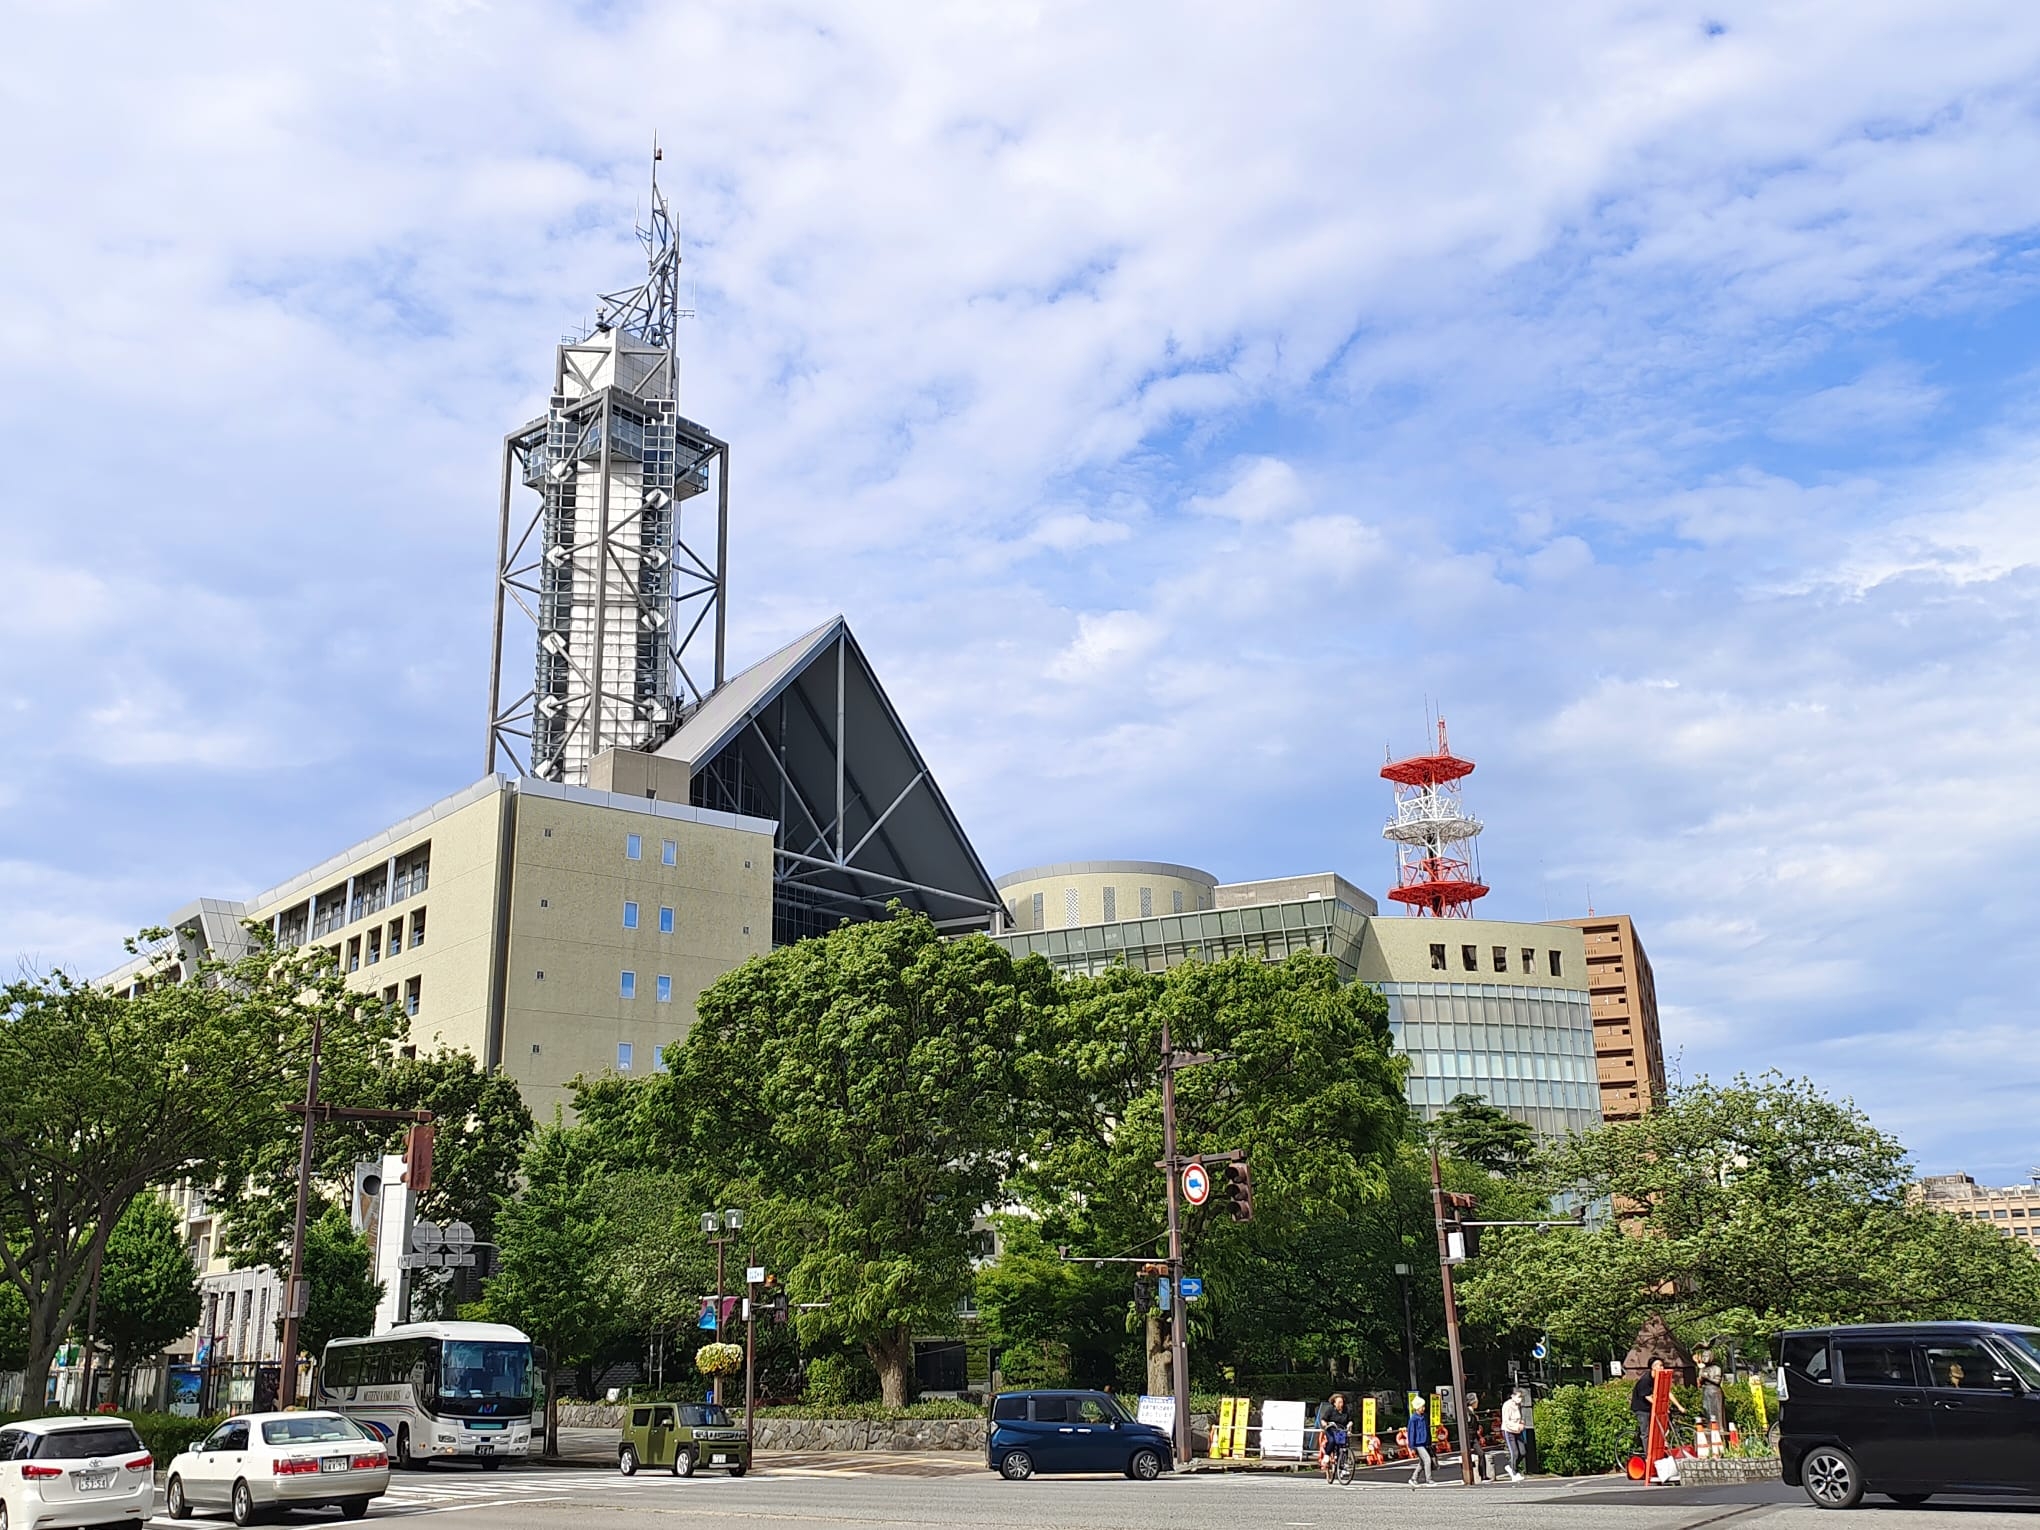 免費景點:富山市役所展望塔